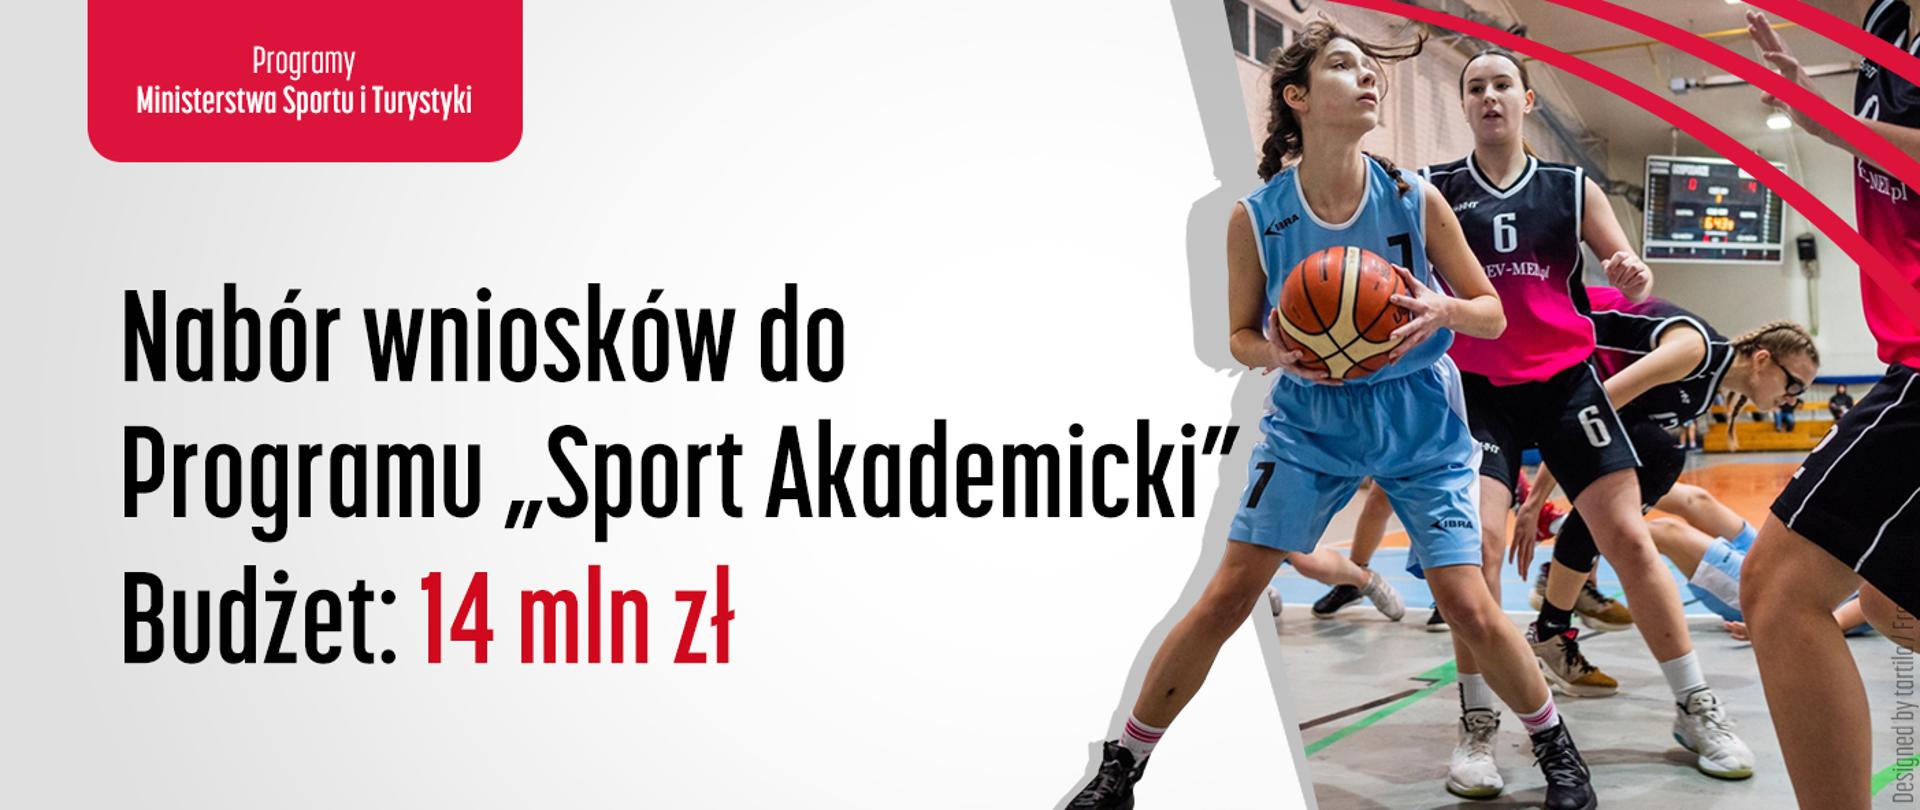 Na grafice znajdują się napisy: „Nabór wniosków do Programu Sport Akademicki. Budżet: 14 mln zł” oraz „Programy Ministerstwa Sportu i Turystyki”. Po prawej stronie grafiki znajdują się sylwetki koszykarek.